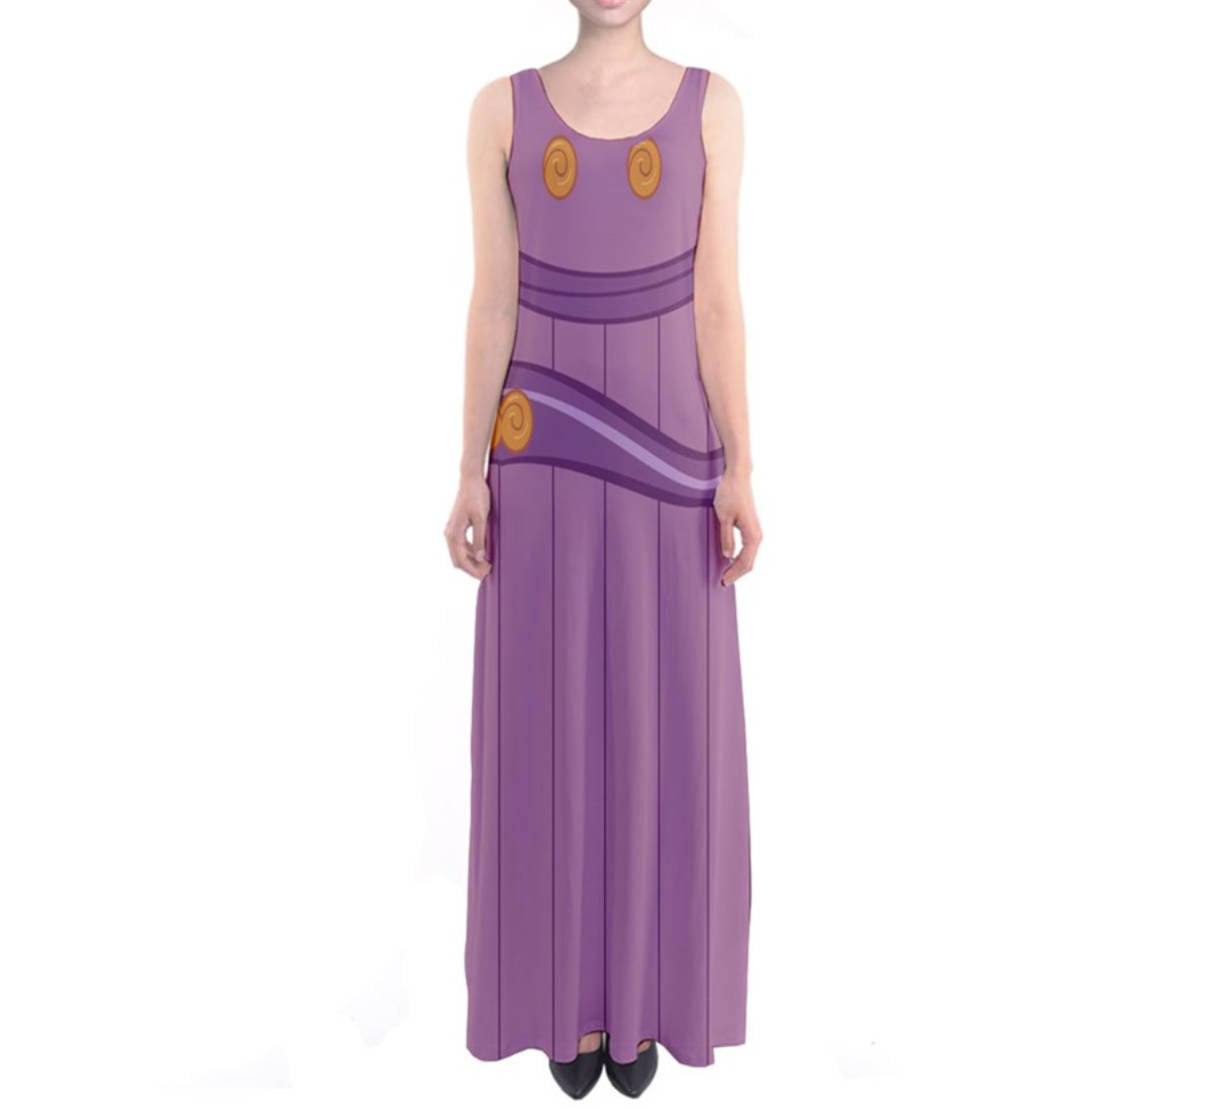 Megara Hercules Inspired Sleeveless Maxi Dress